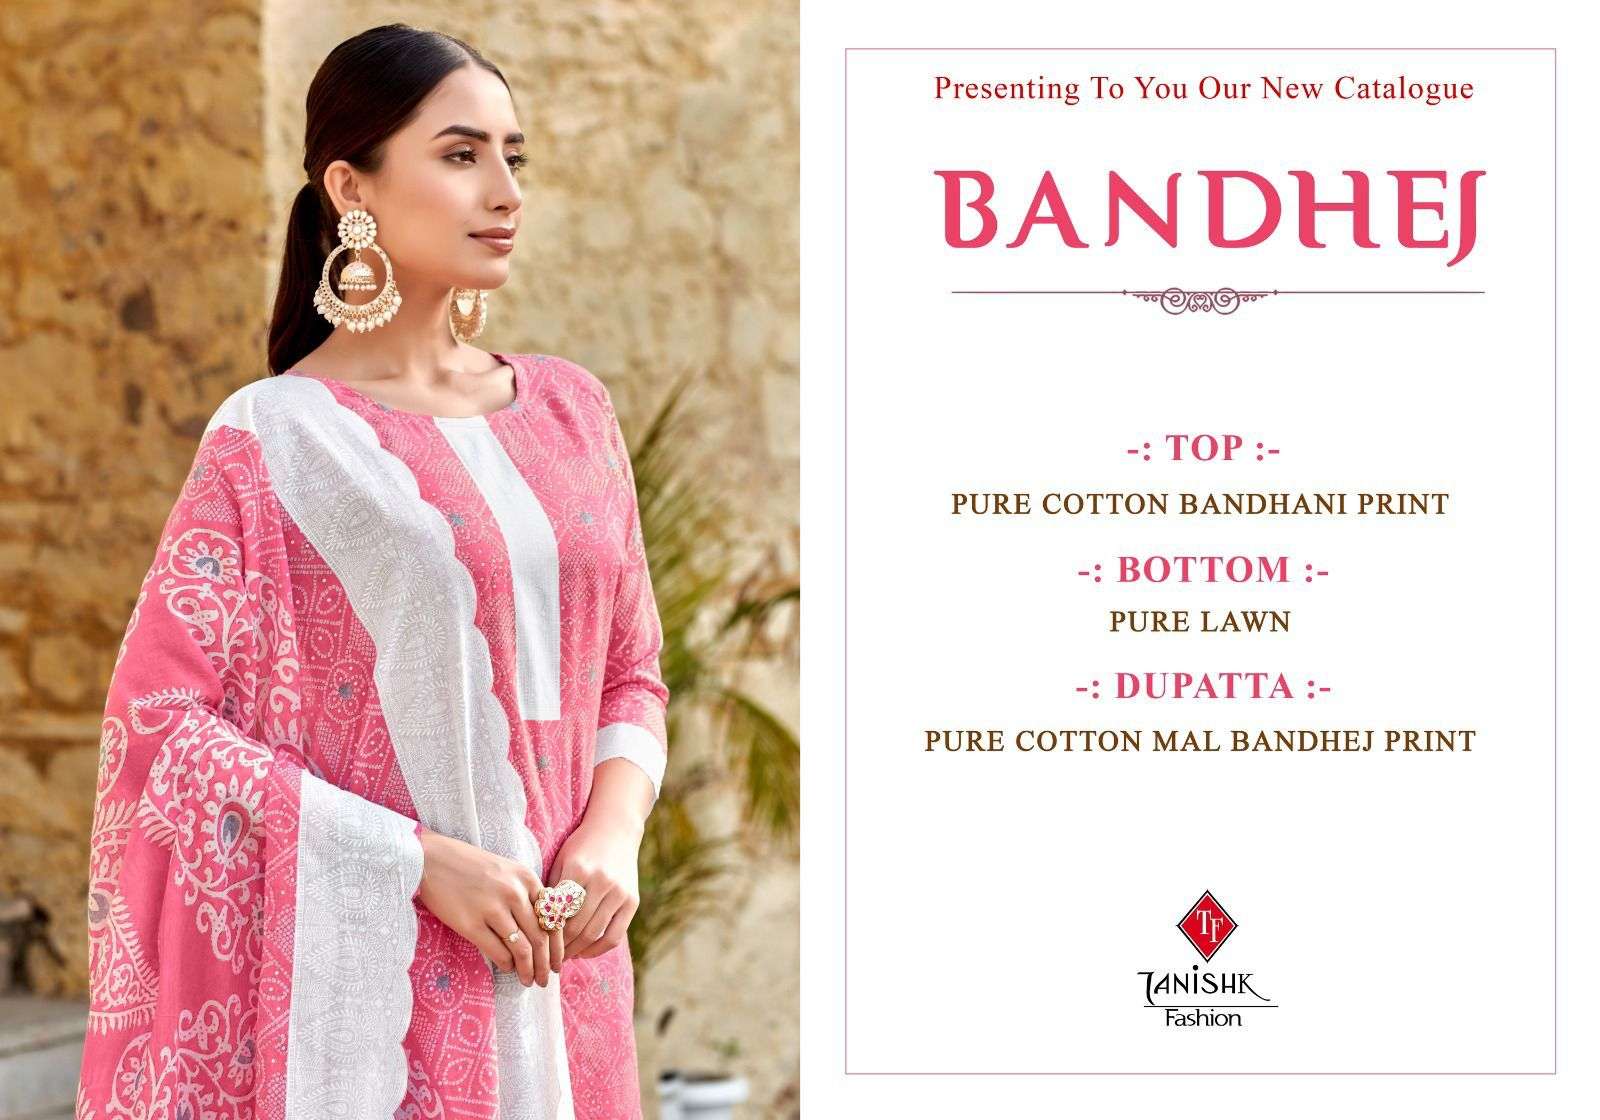 tanishk fashion bandhej 6601-6608 series trendy designer salwar kameez catalogue wholesale price surat 